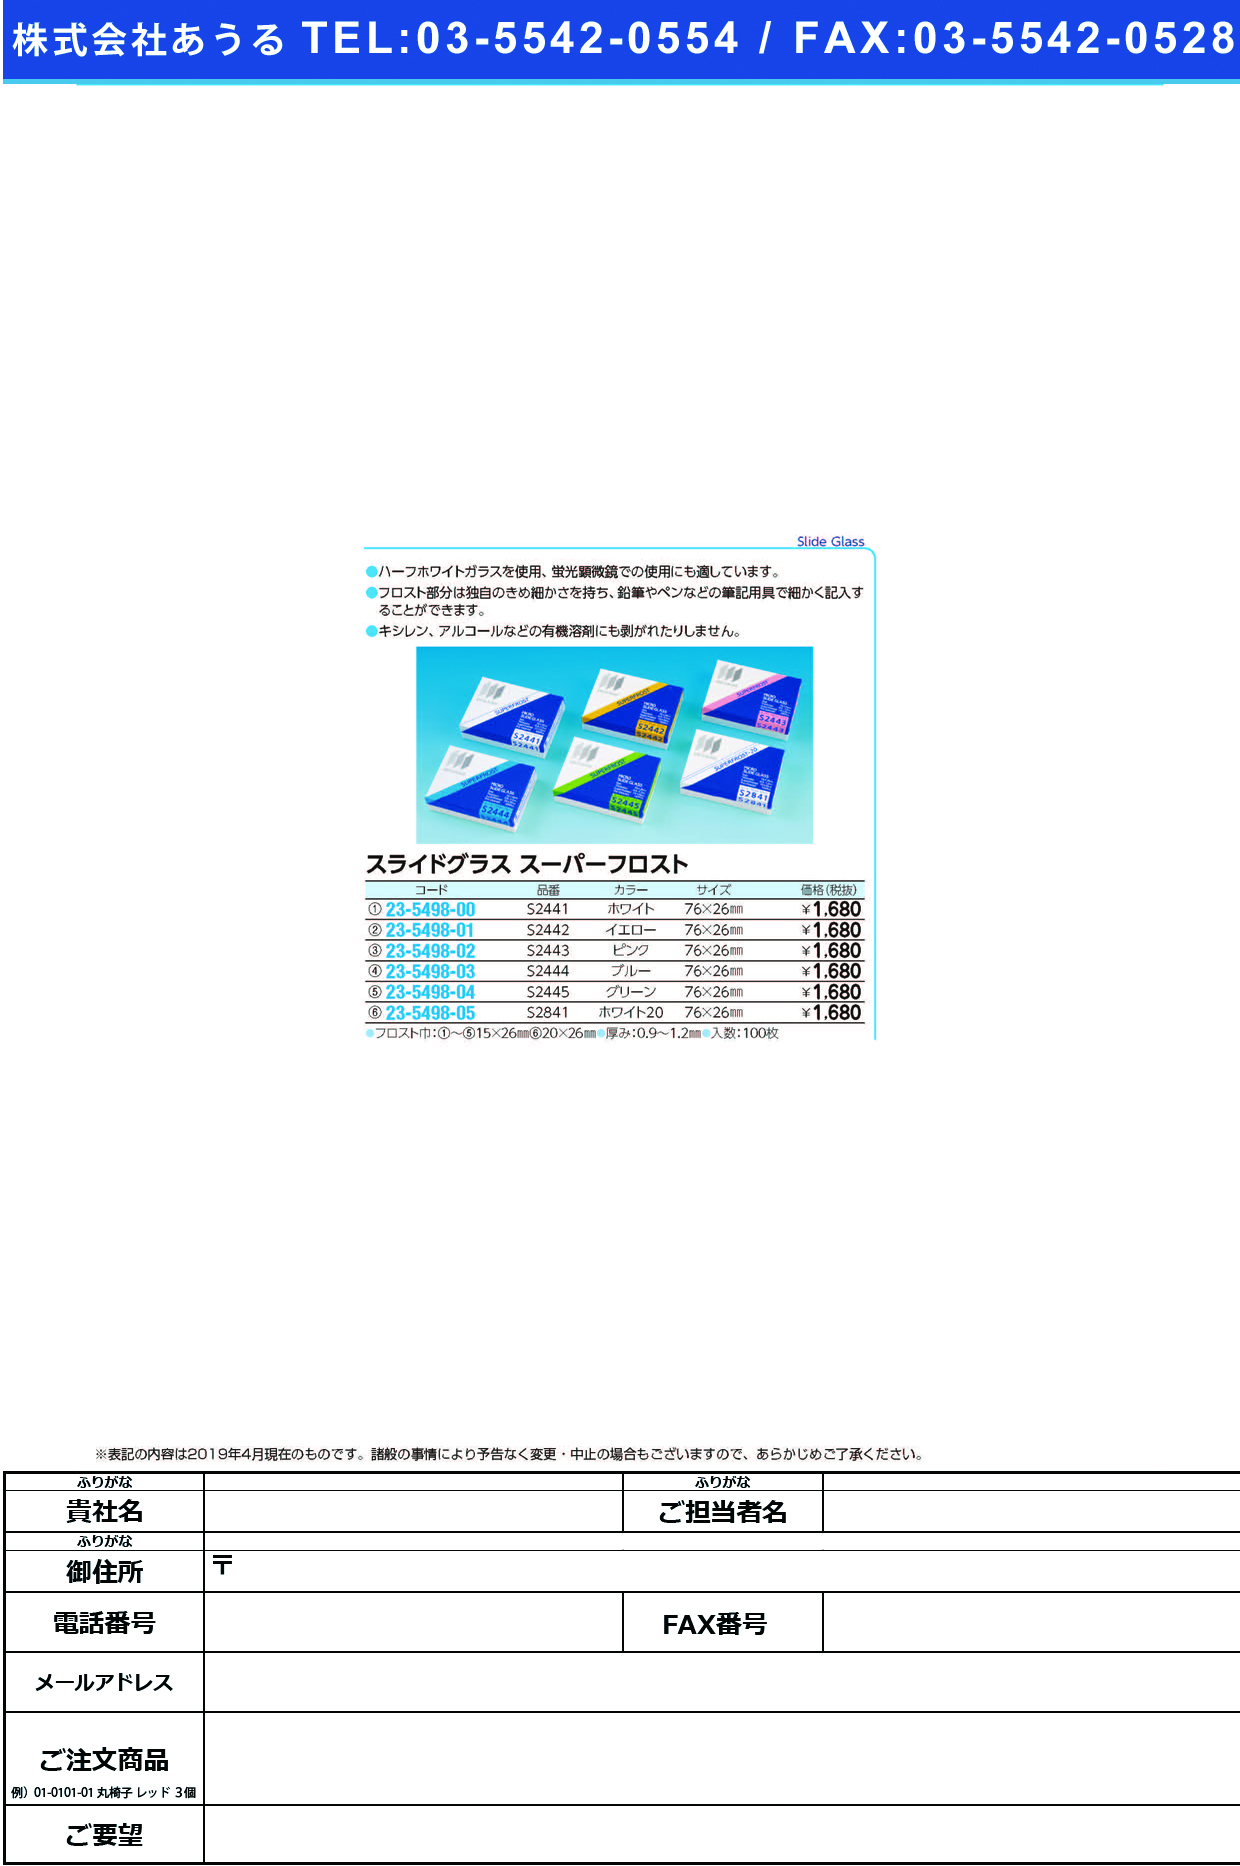 (23-5498-01)松浪スライドグラススーパーフロスト S2442(ｲｴﾛｰ)100ﾏｲ ﾏﾂﾅﾐｽﾗｲﾄﾞｸﾞﾗｽｽｰﾊﾟｰﾌﾛ【1箱単位】【2019年カタログ商品】